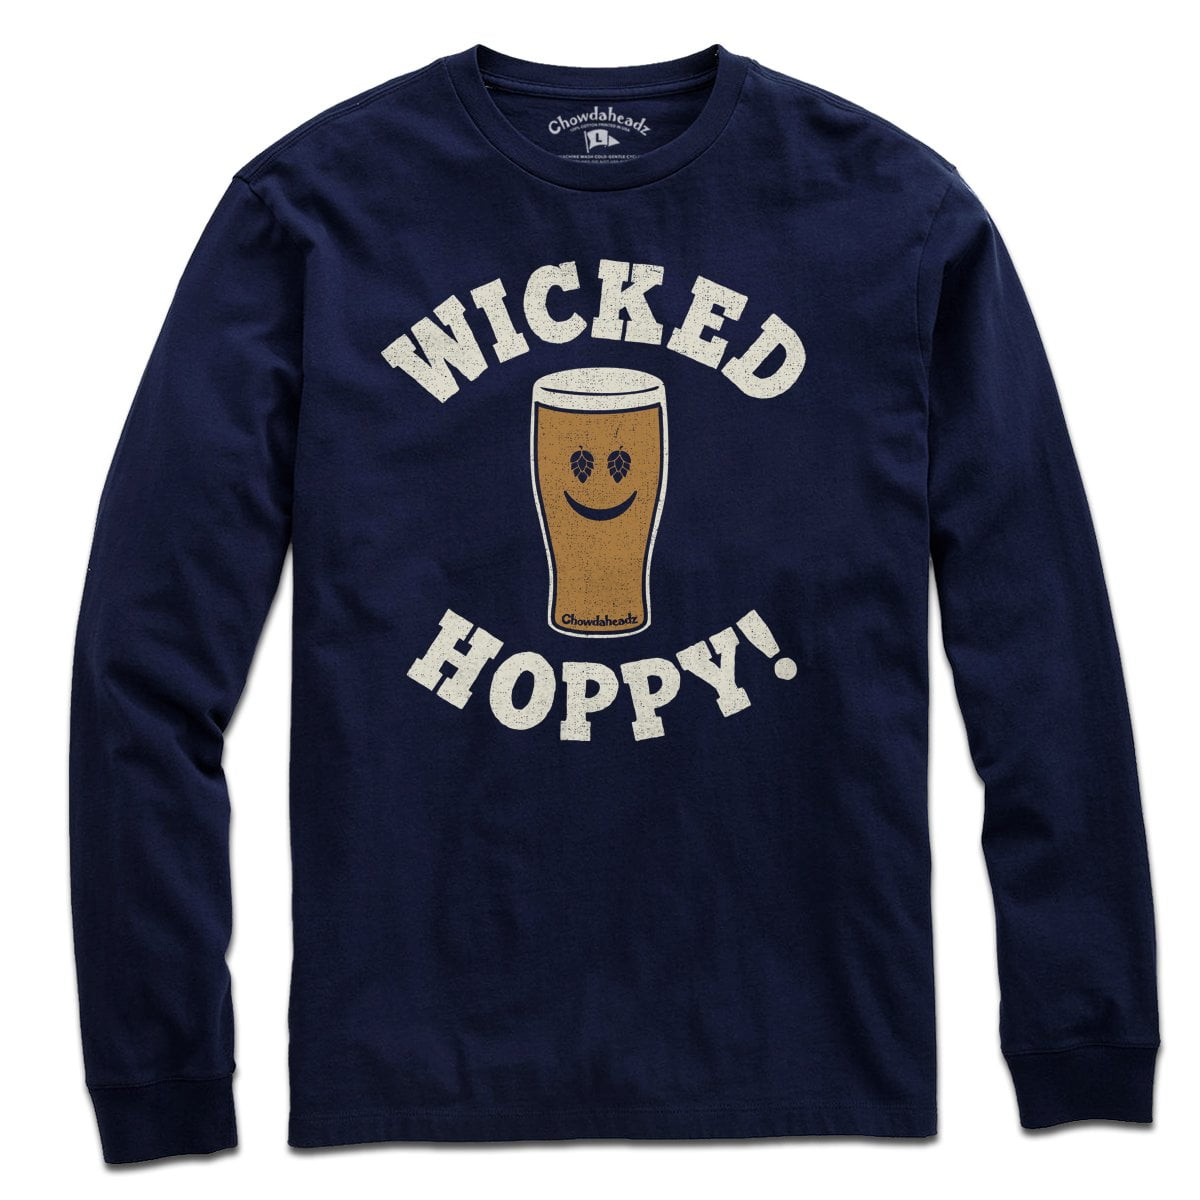 Wicked Hoppy T-Shirt - Chowdaheadz